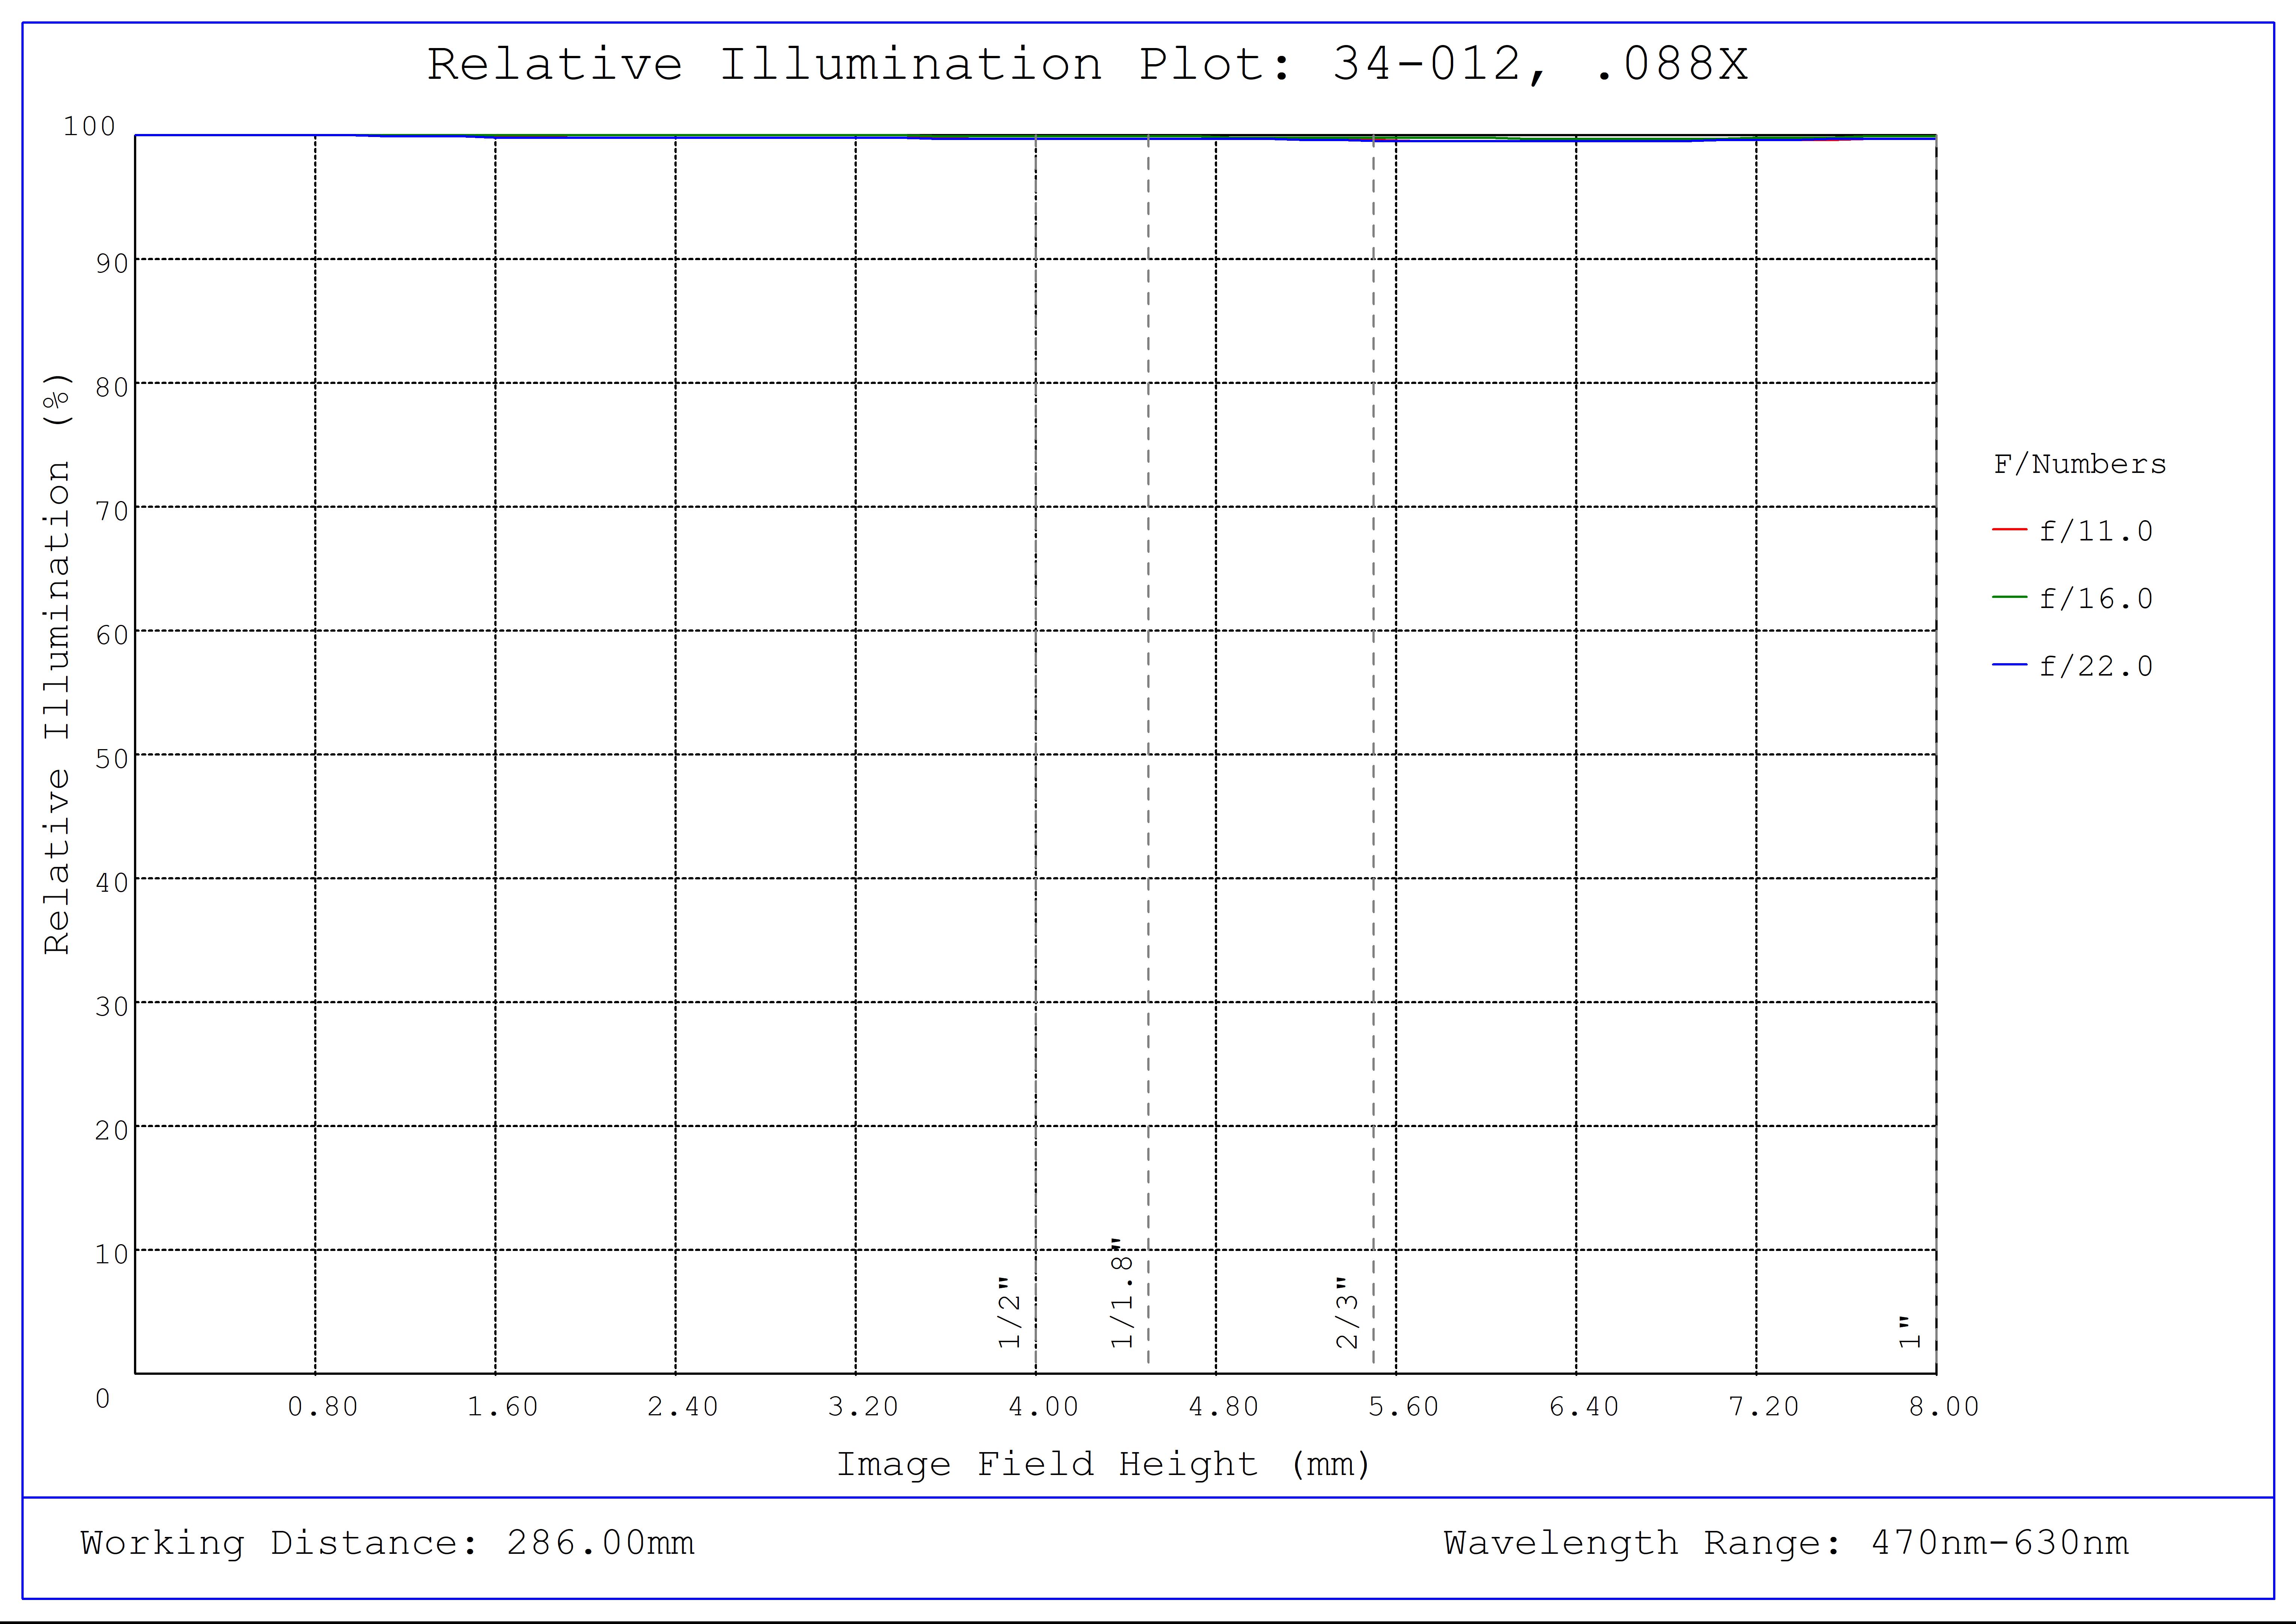 #34-012, 0.088X, 1" C-Mount TitanTL® Telecentric Lens, Relative Illumination Plot